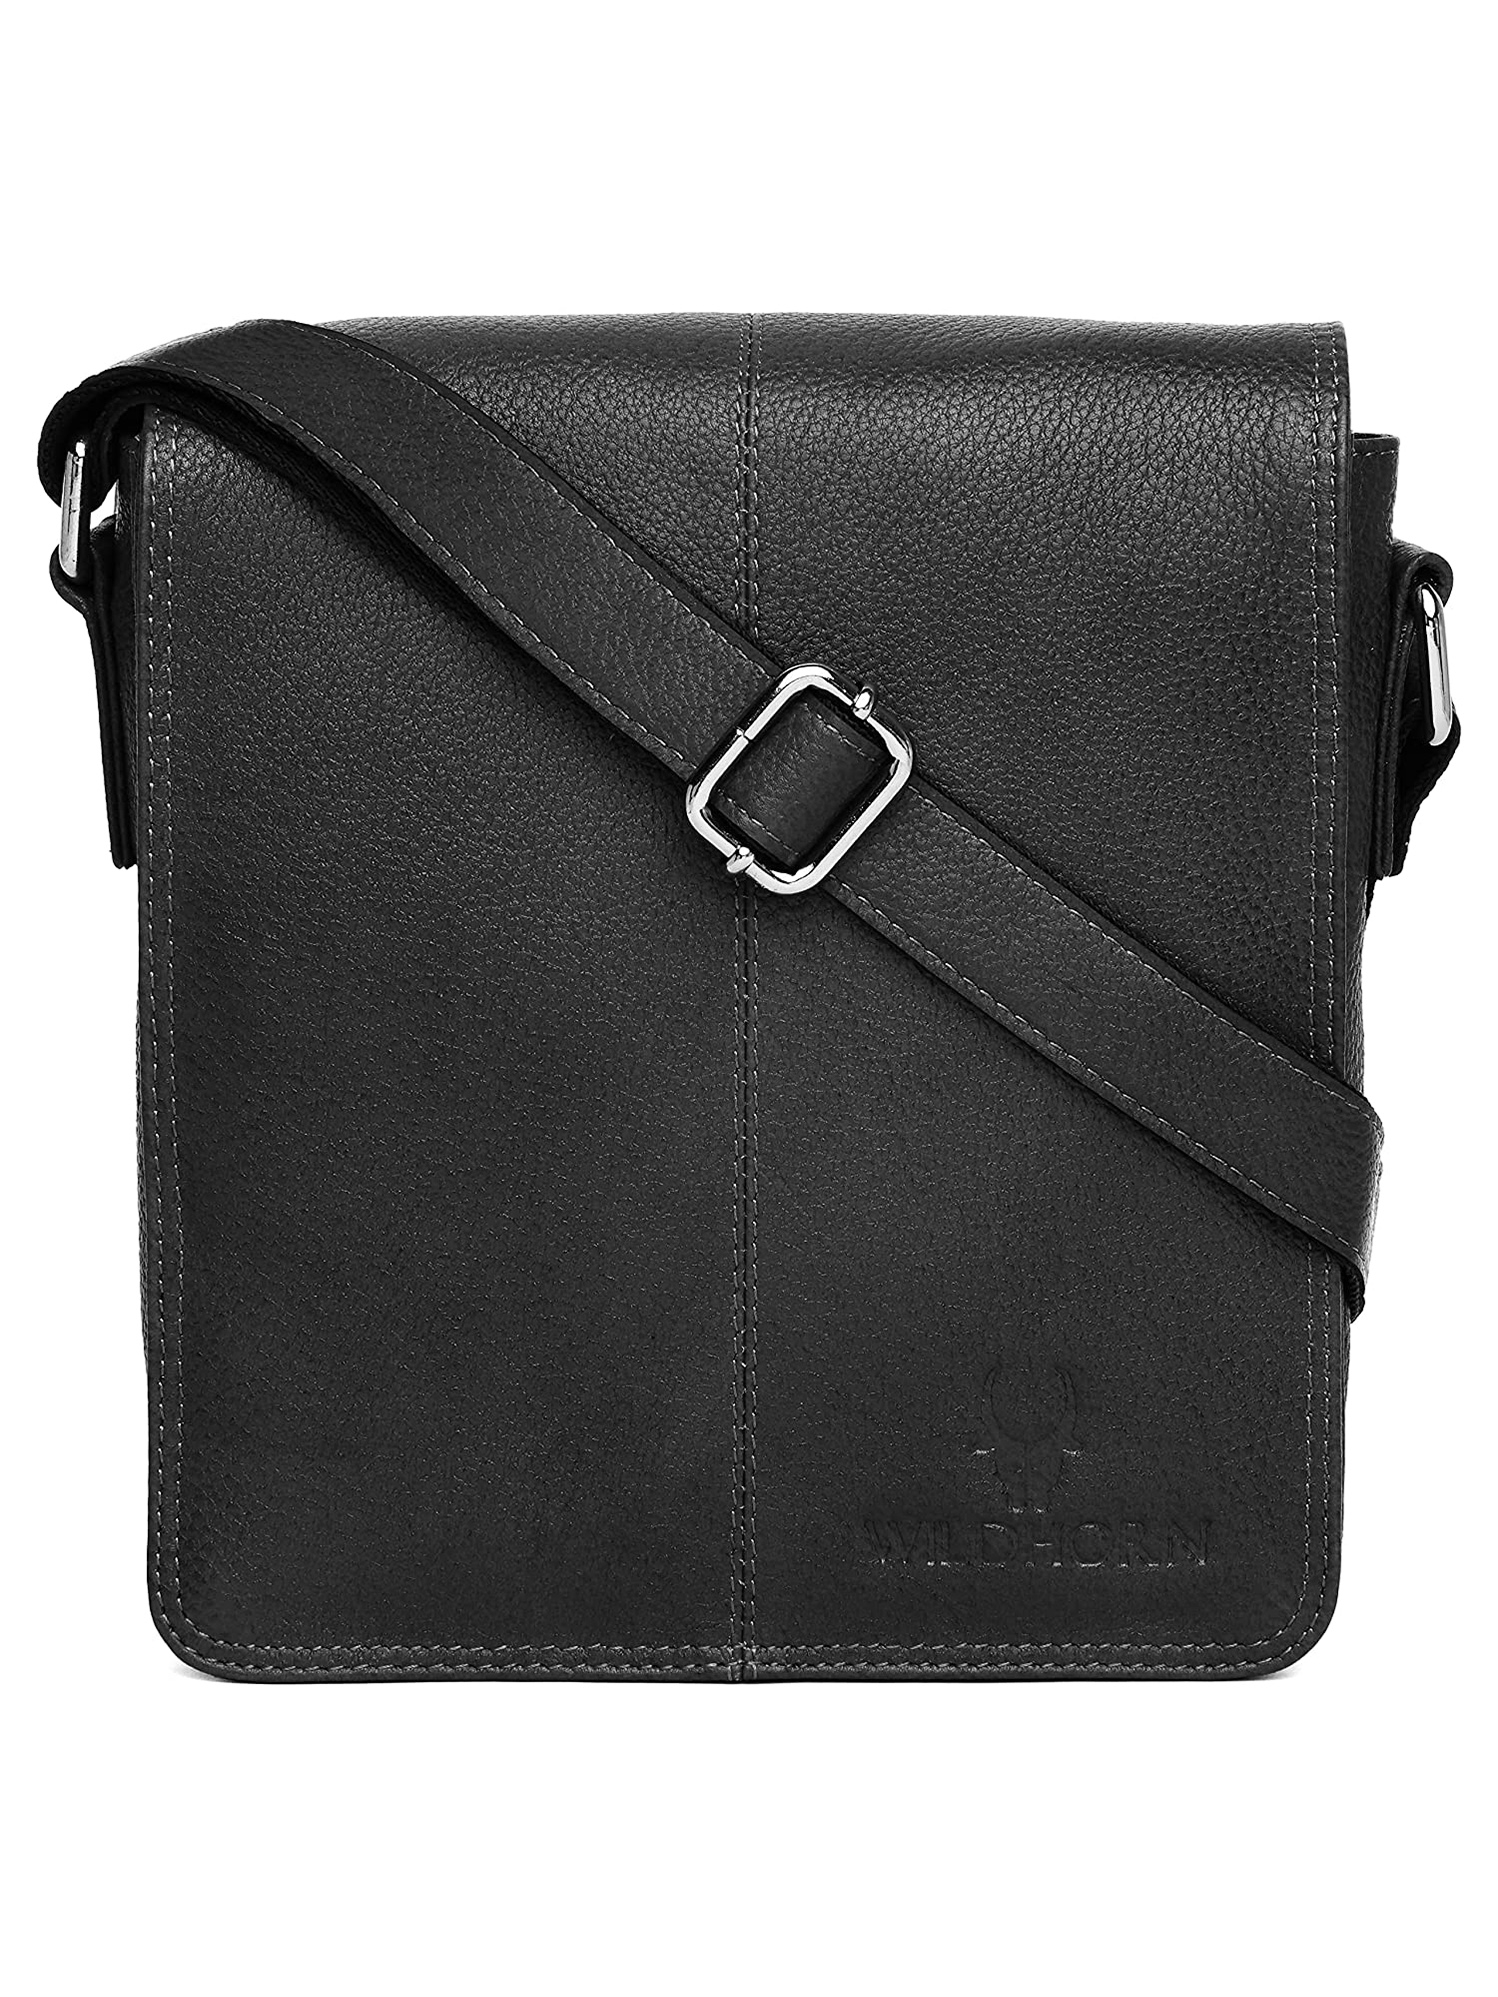 WildHorn | WildHorn 100% Genuine Classic Leather Black Sling Bag for Men